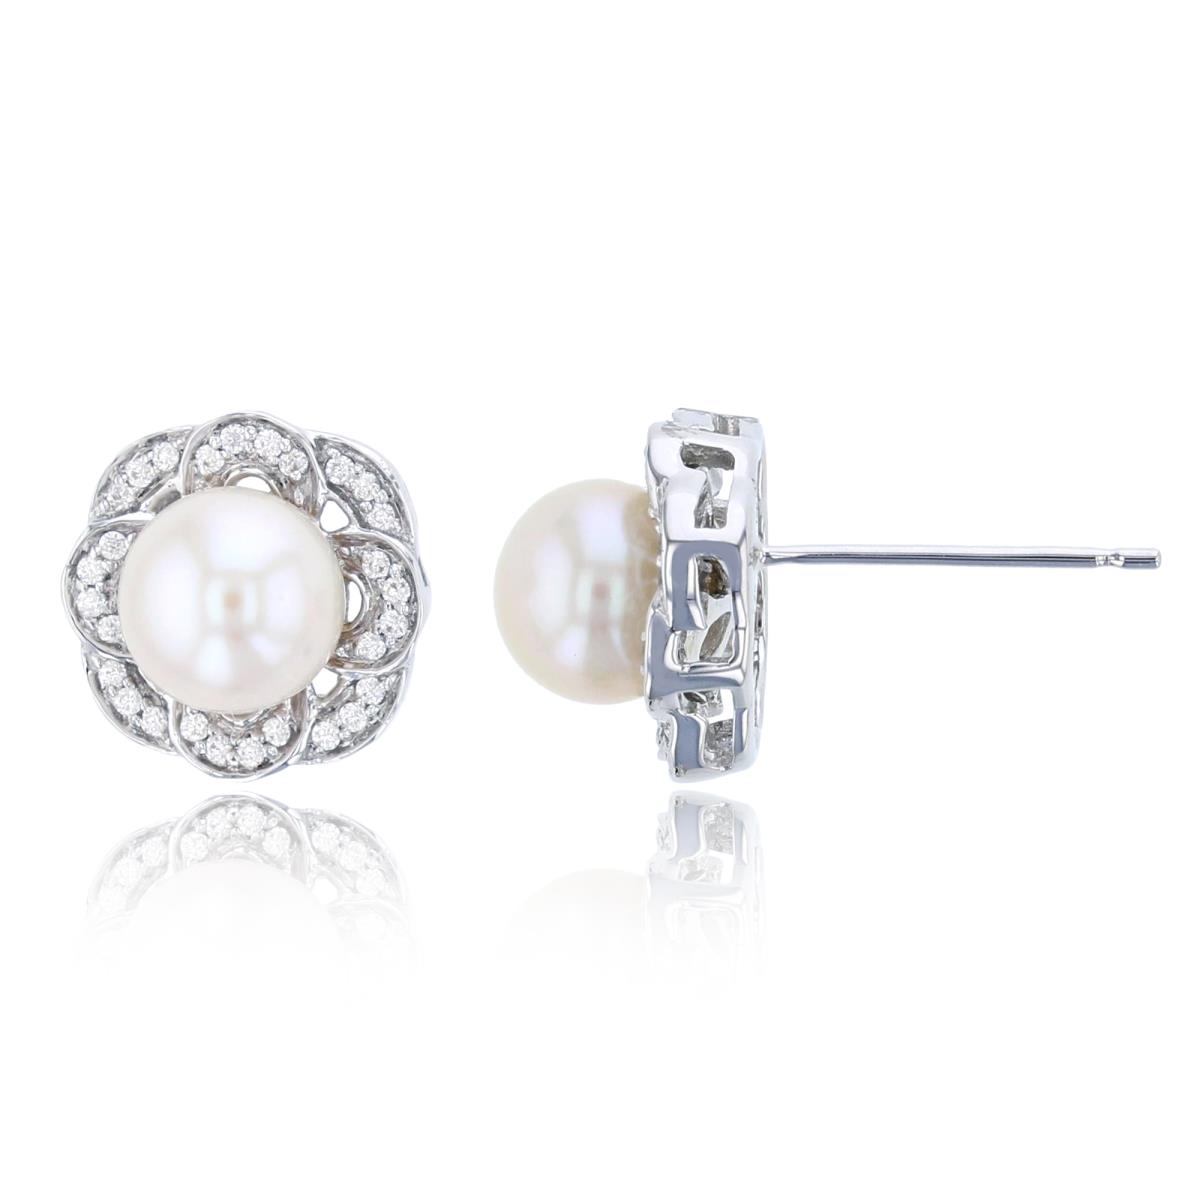 14K White Gold 0.11 CTTW Rnd Diamonds & 6mm Rnd White Pearl Stud Earring